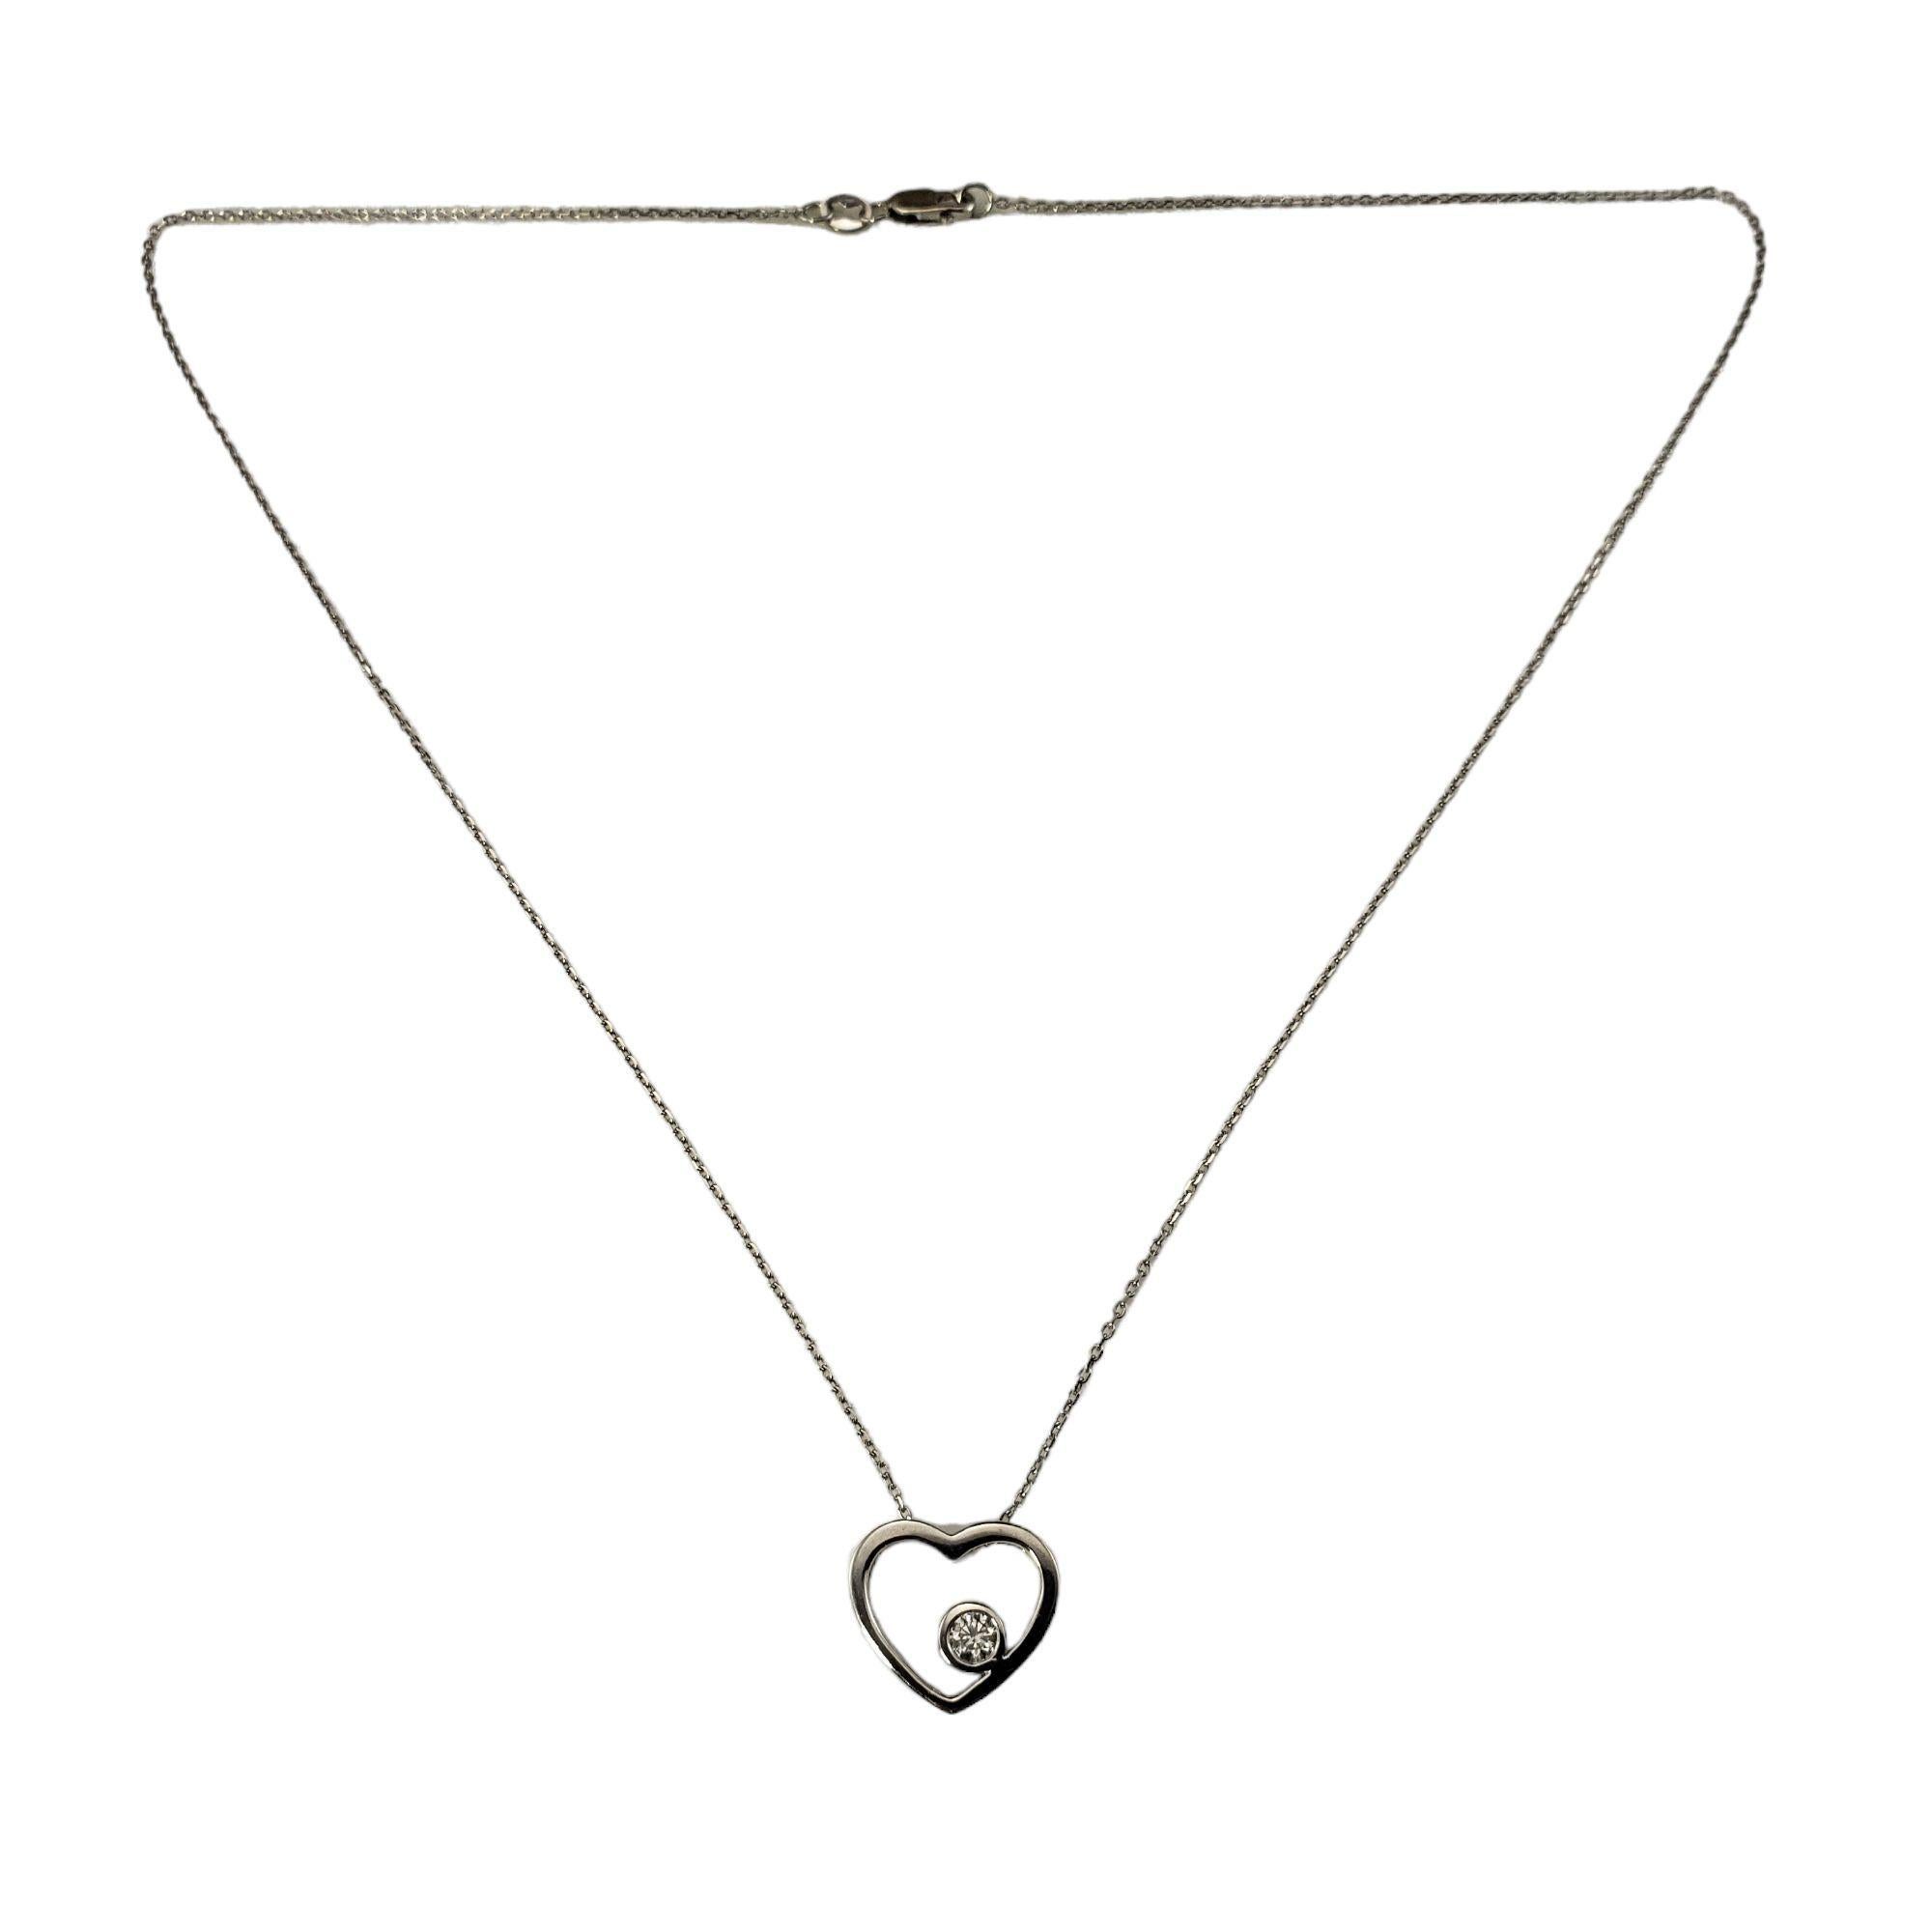 Collier à pendentif cœur ouvert en or blanc 14 carats et diamants-

Ce ravissant collier pendentif en forme de cœur est orné d'un diamant rond de taille brillant serti dans de l'or blanc 14 carats classique. 

Poids approximatif des diamants : 0,15